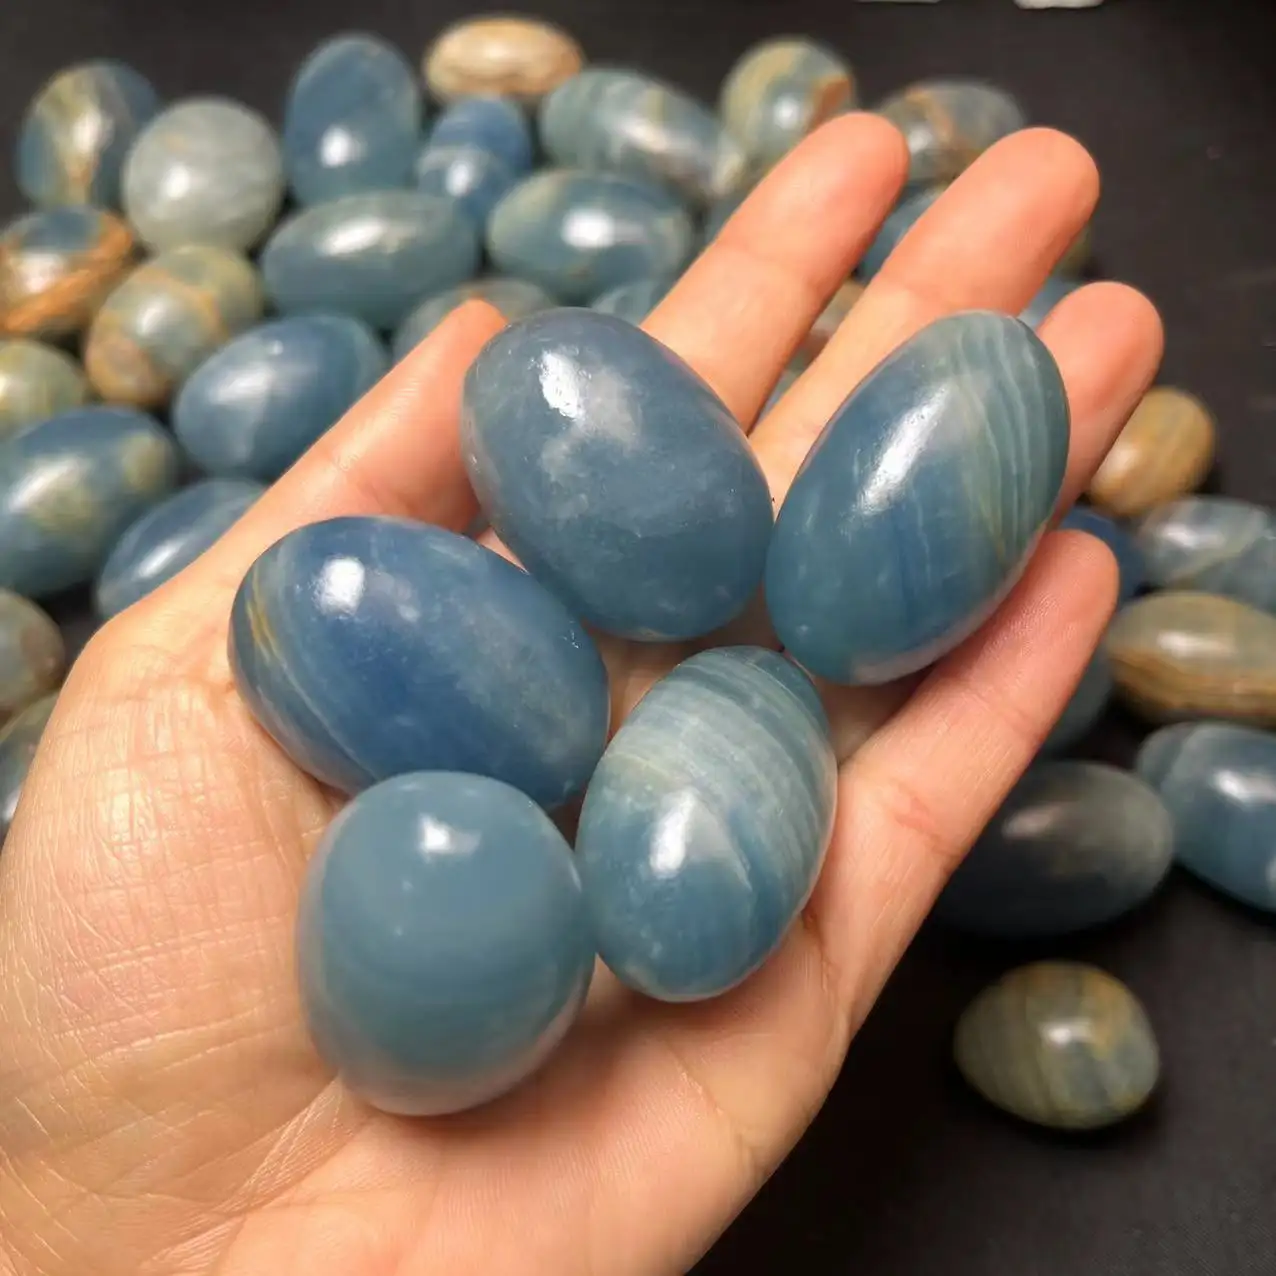 Wholesale Healing Stones Crystal Beautiful Polished Blue Onyx Tumble Stone For Decoration